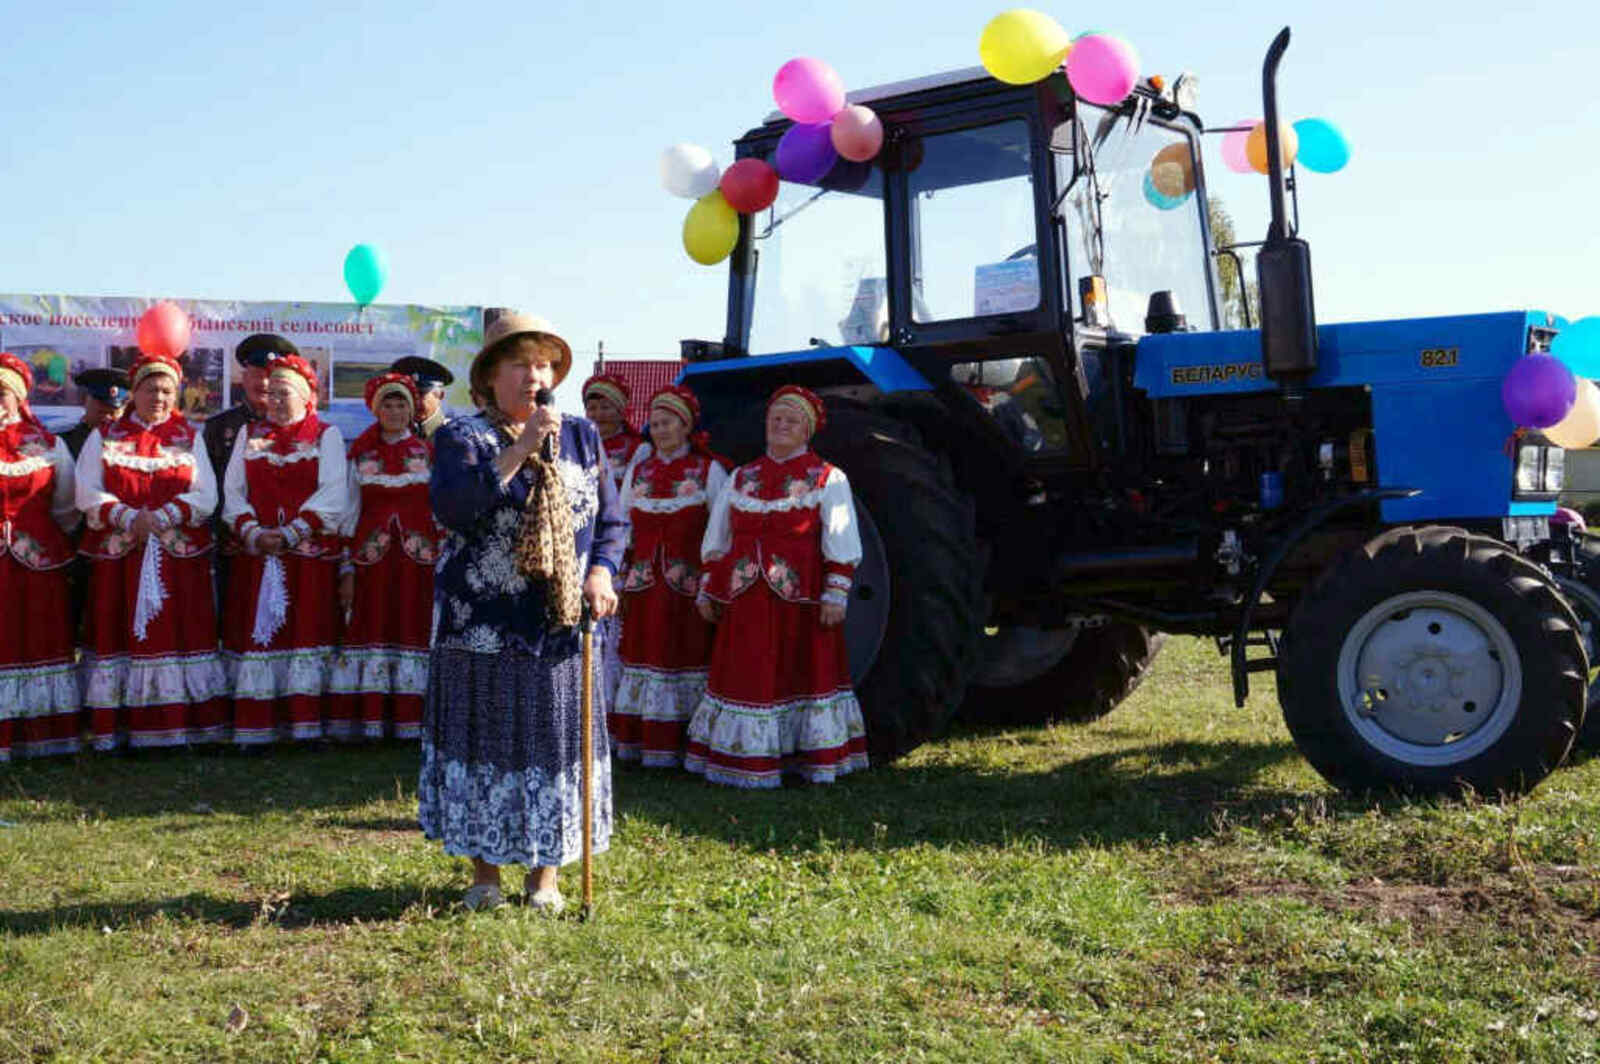 Для табынцев приобретение трактора – настоящий праздник, ведь теперь многие вопросы в сельсовете будут решаться быстрее и качественнее.